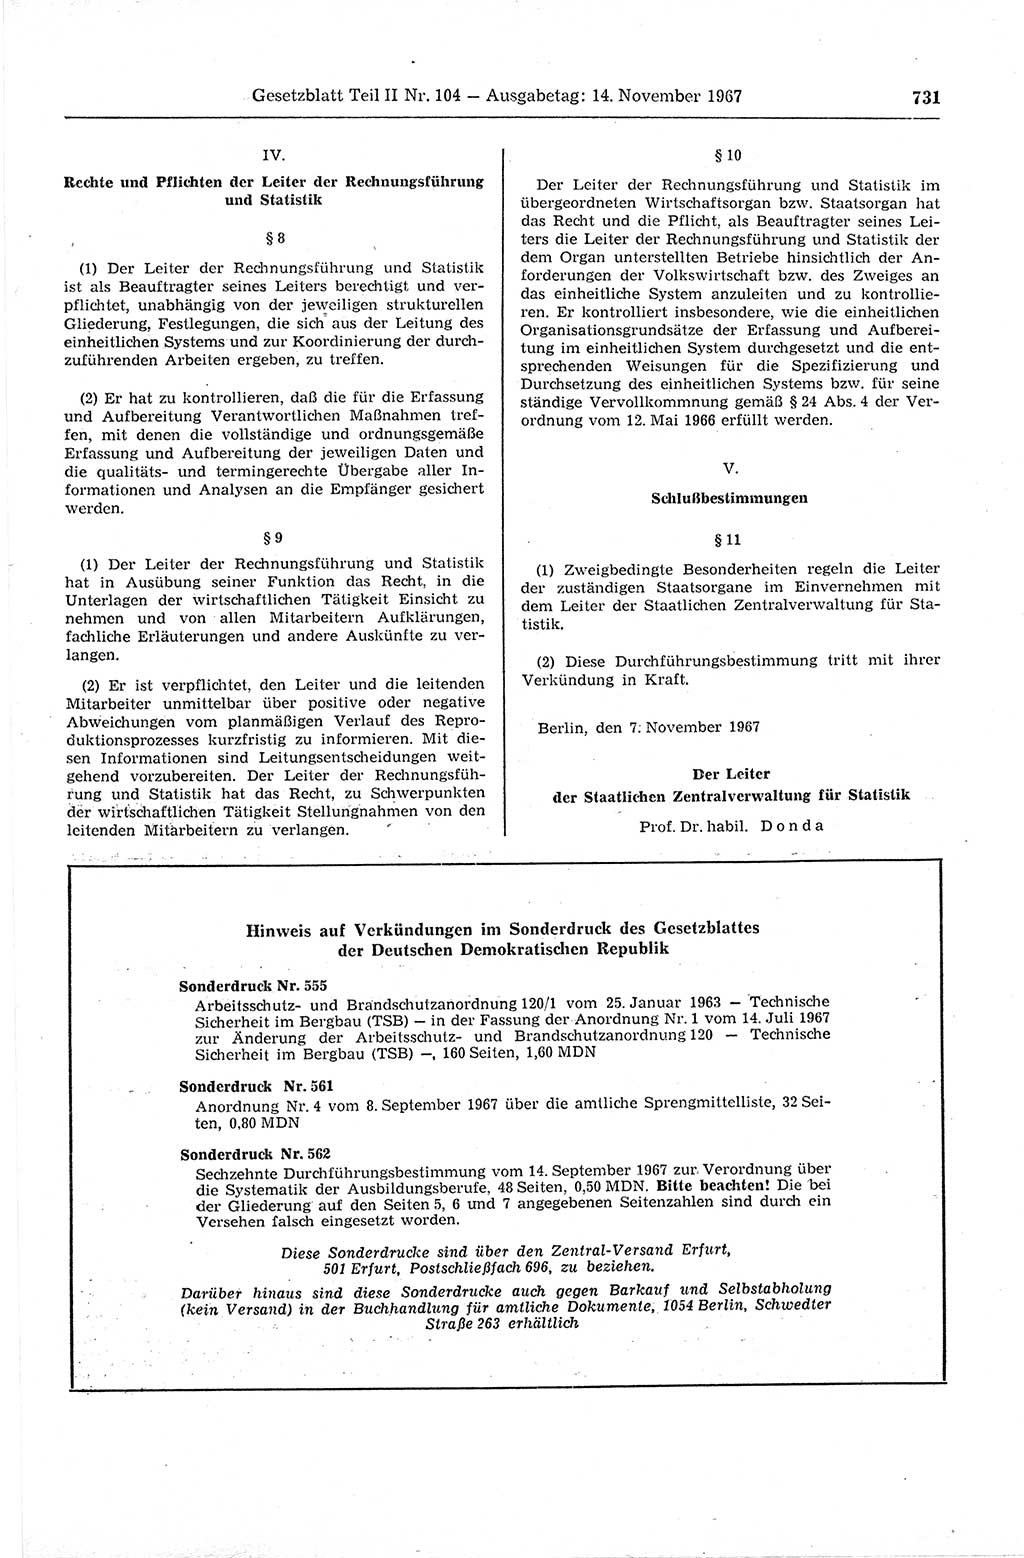 Gesetzblatt (GBl.) der Deutschen Demokratischen Republik (DDR) Teil ⅠⅠ 1967, Seite 731 (GBl. DDR ⅠⅠ 1967, S. 731)